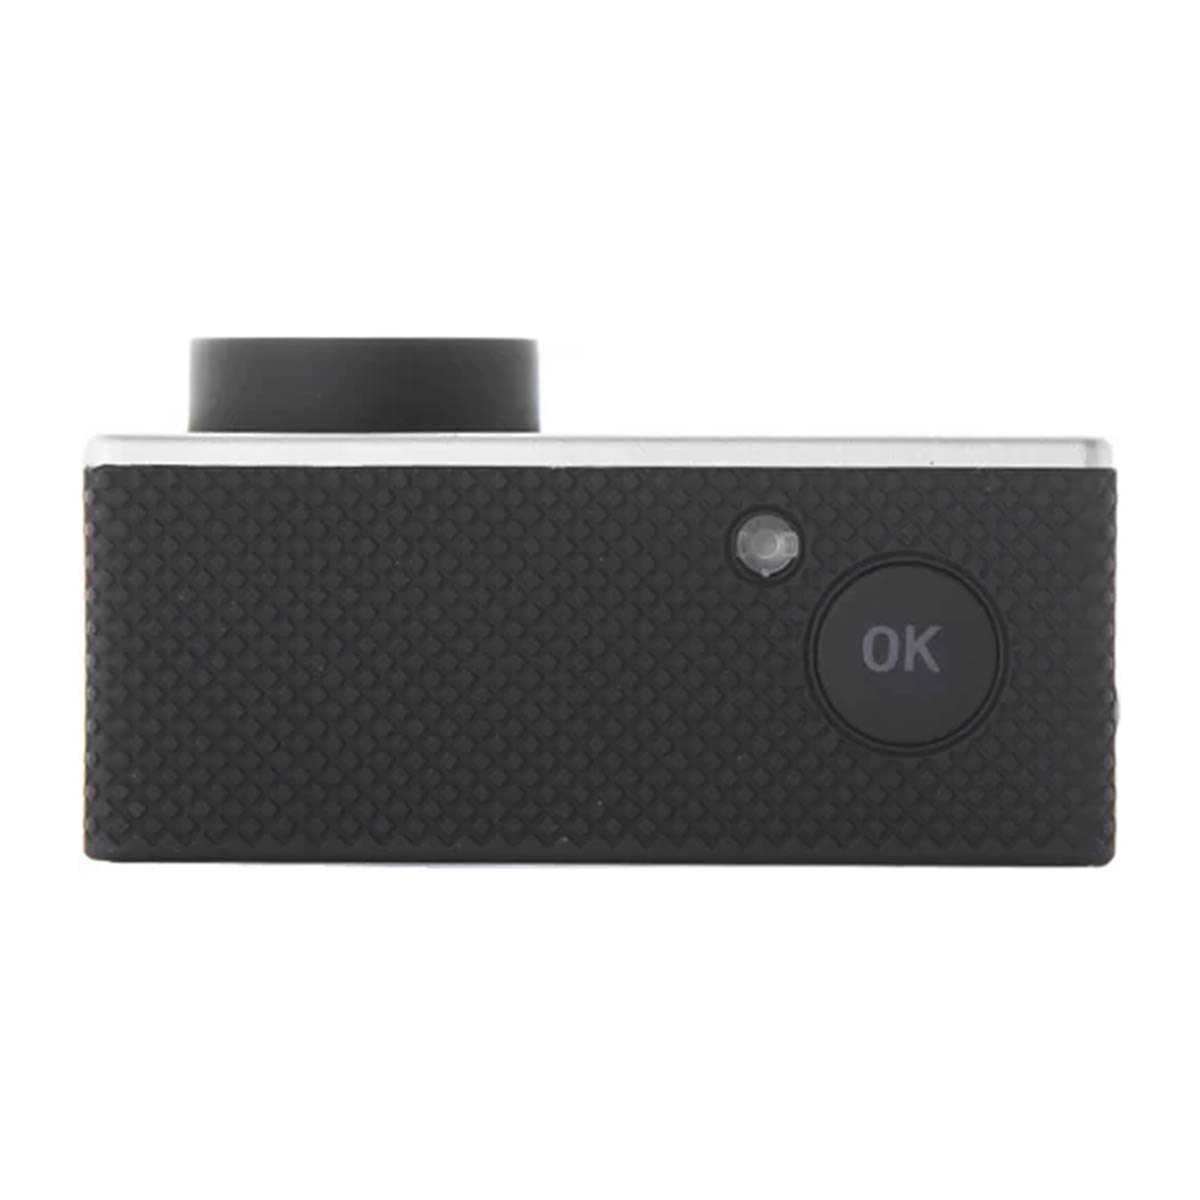 Экшн камера SJCAM SJ4000 AIR, Wi-Fi, 4K разрешение, цвет серебристый